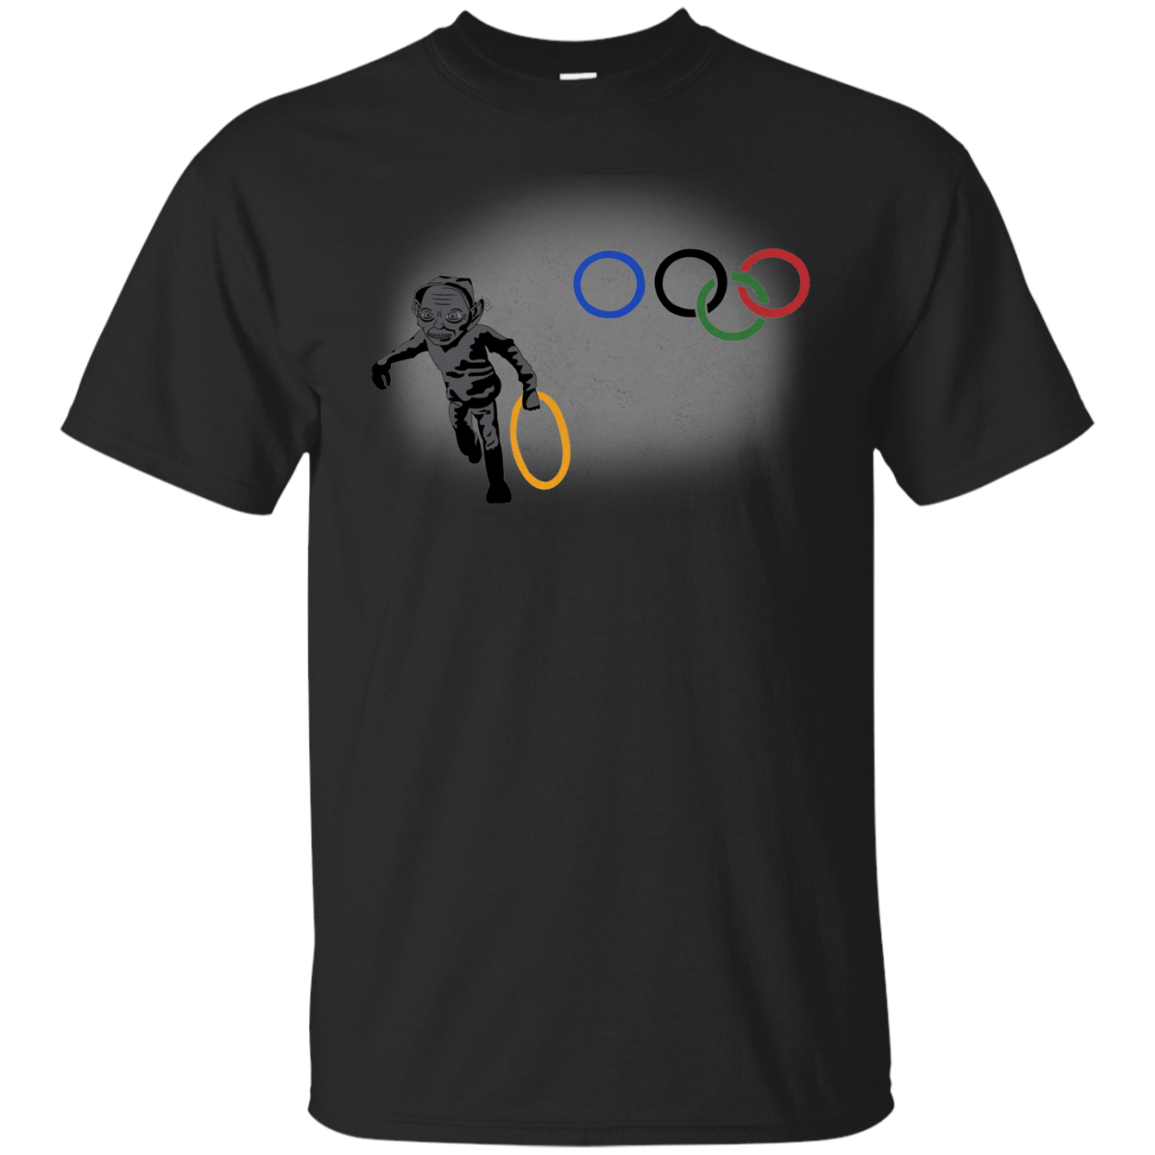 T-Shirts Black / S Gollympics T-Shirt